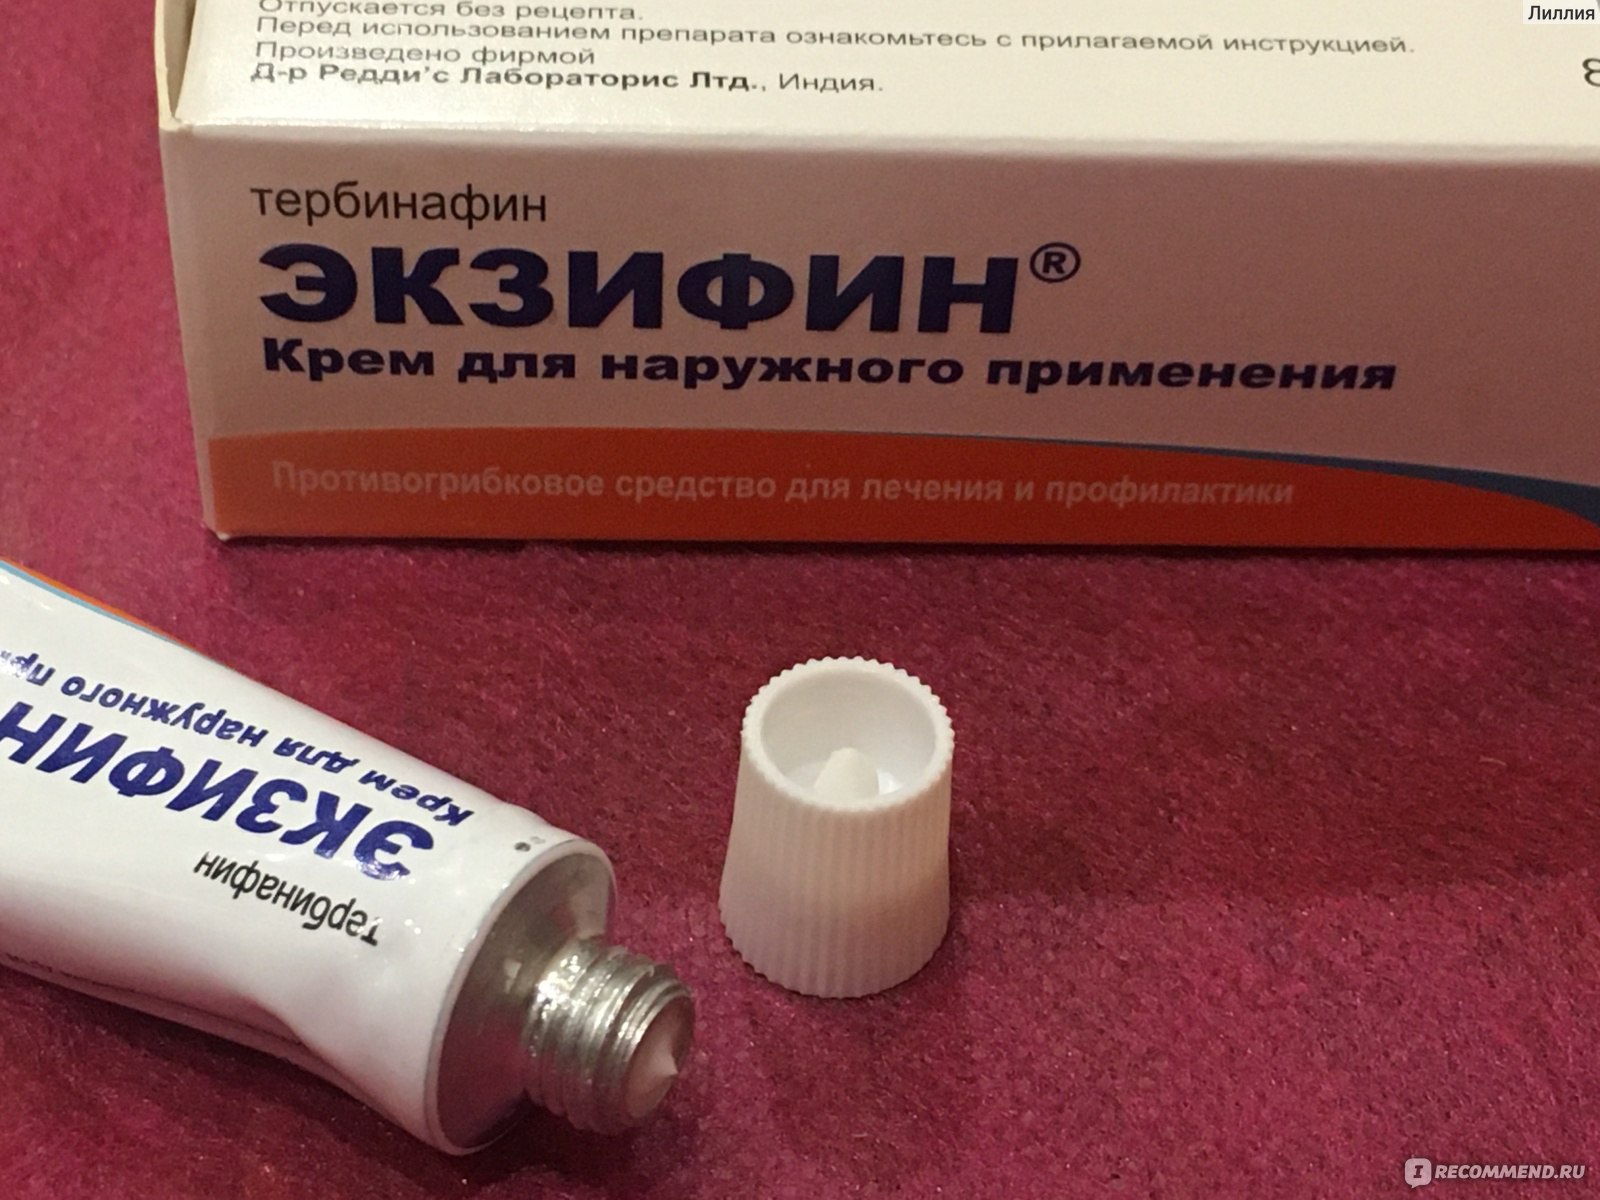 Противогрибковое средство Крем Экзифин 1% 10Г - «Лечение и профилактика .